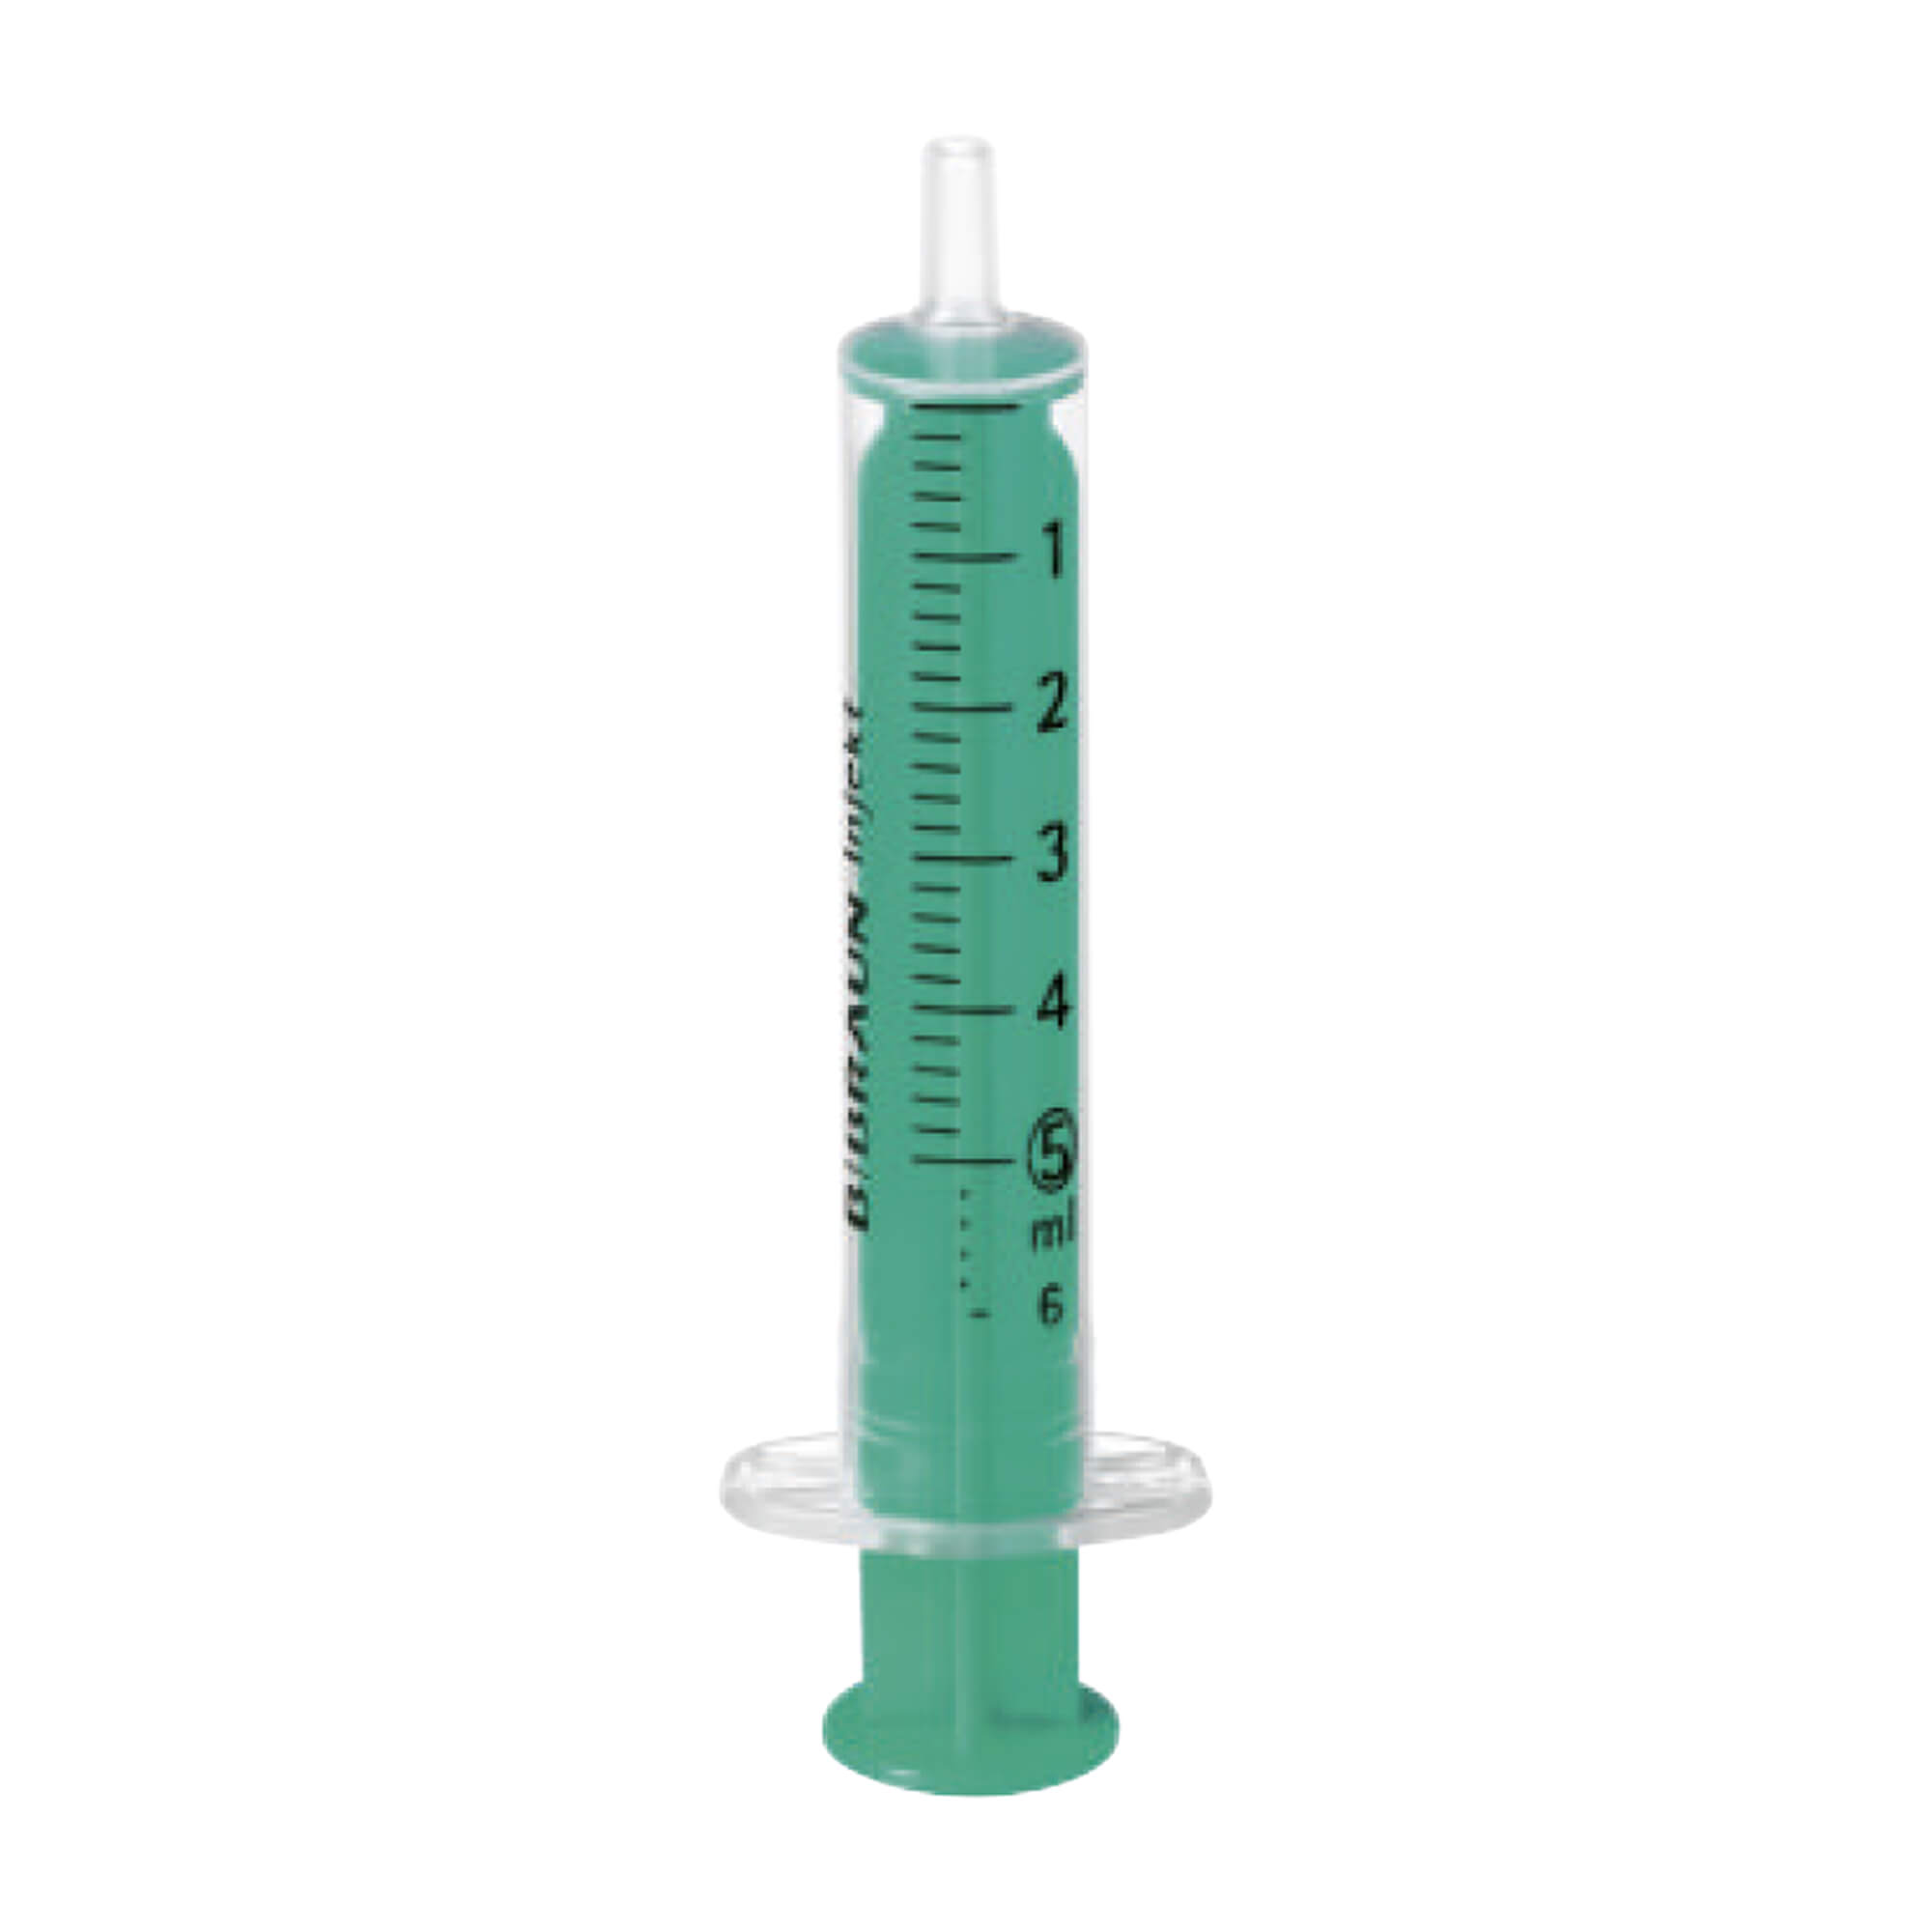 Hochtransparenter Zylinder mit grüner Kolbenstange und schwarzer Graduierung für ideale Ablesbarkeit, wischfest. 5 ml Spritze.